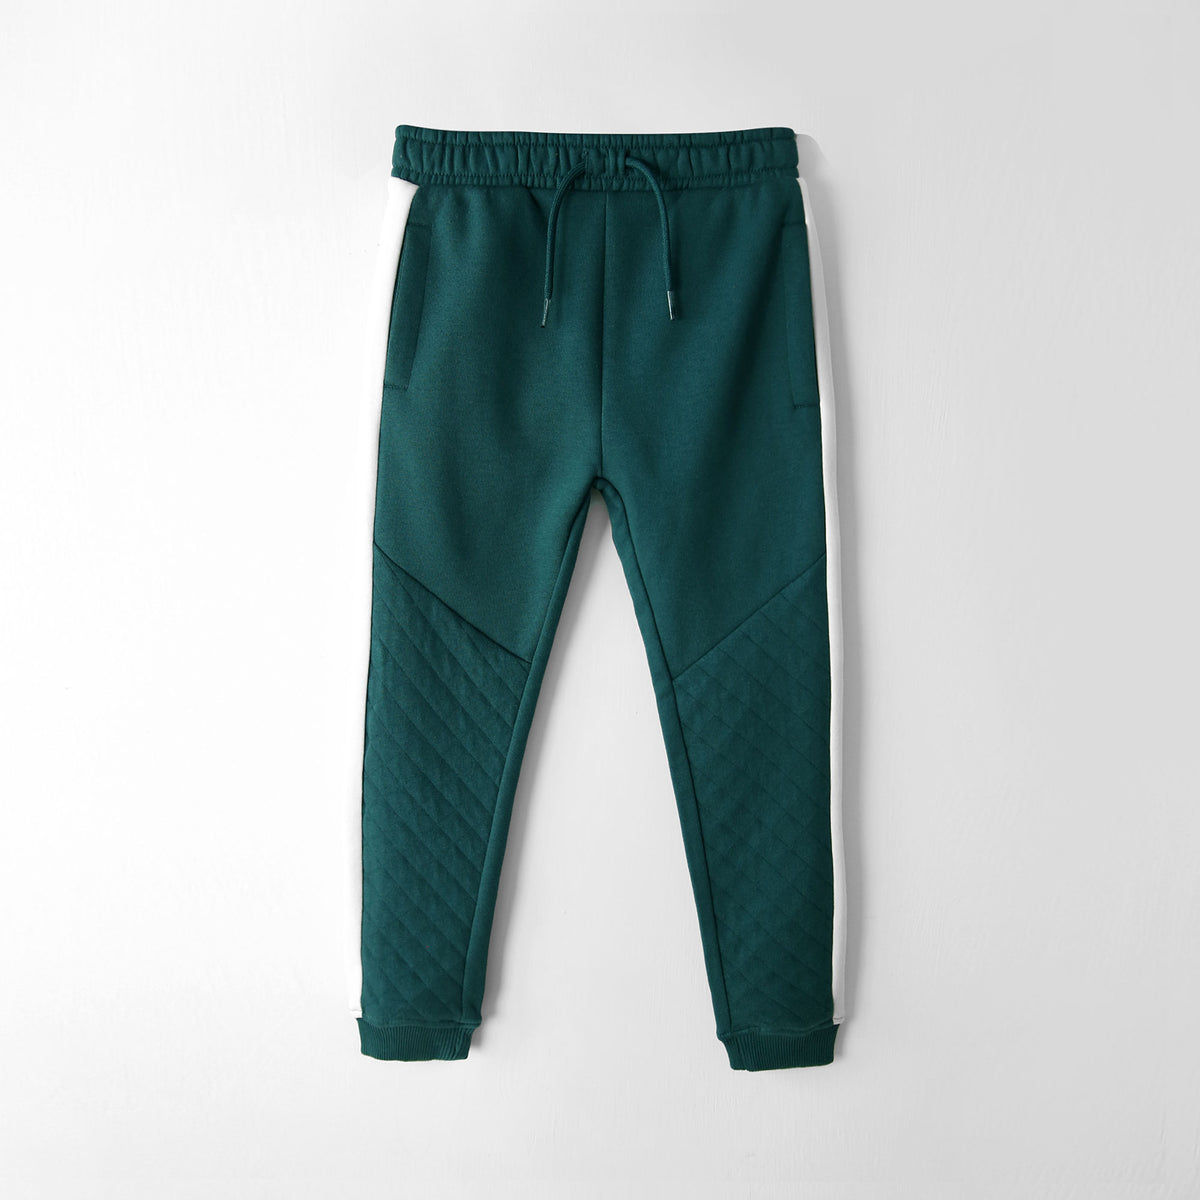 Premium Quality Side Panel Fleece Jogger Trouser For Kids